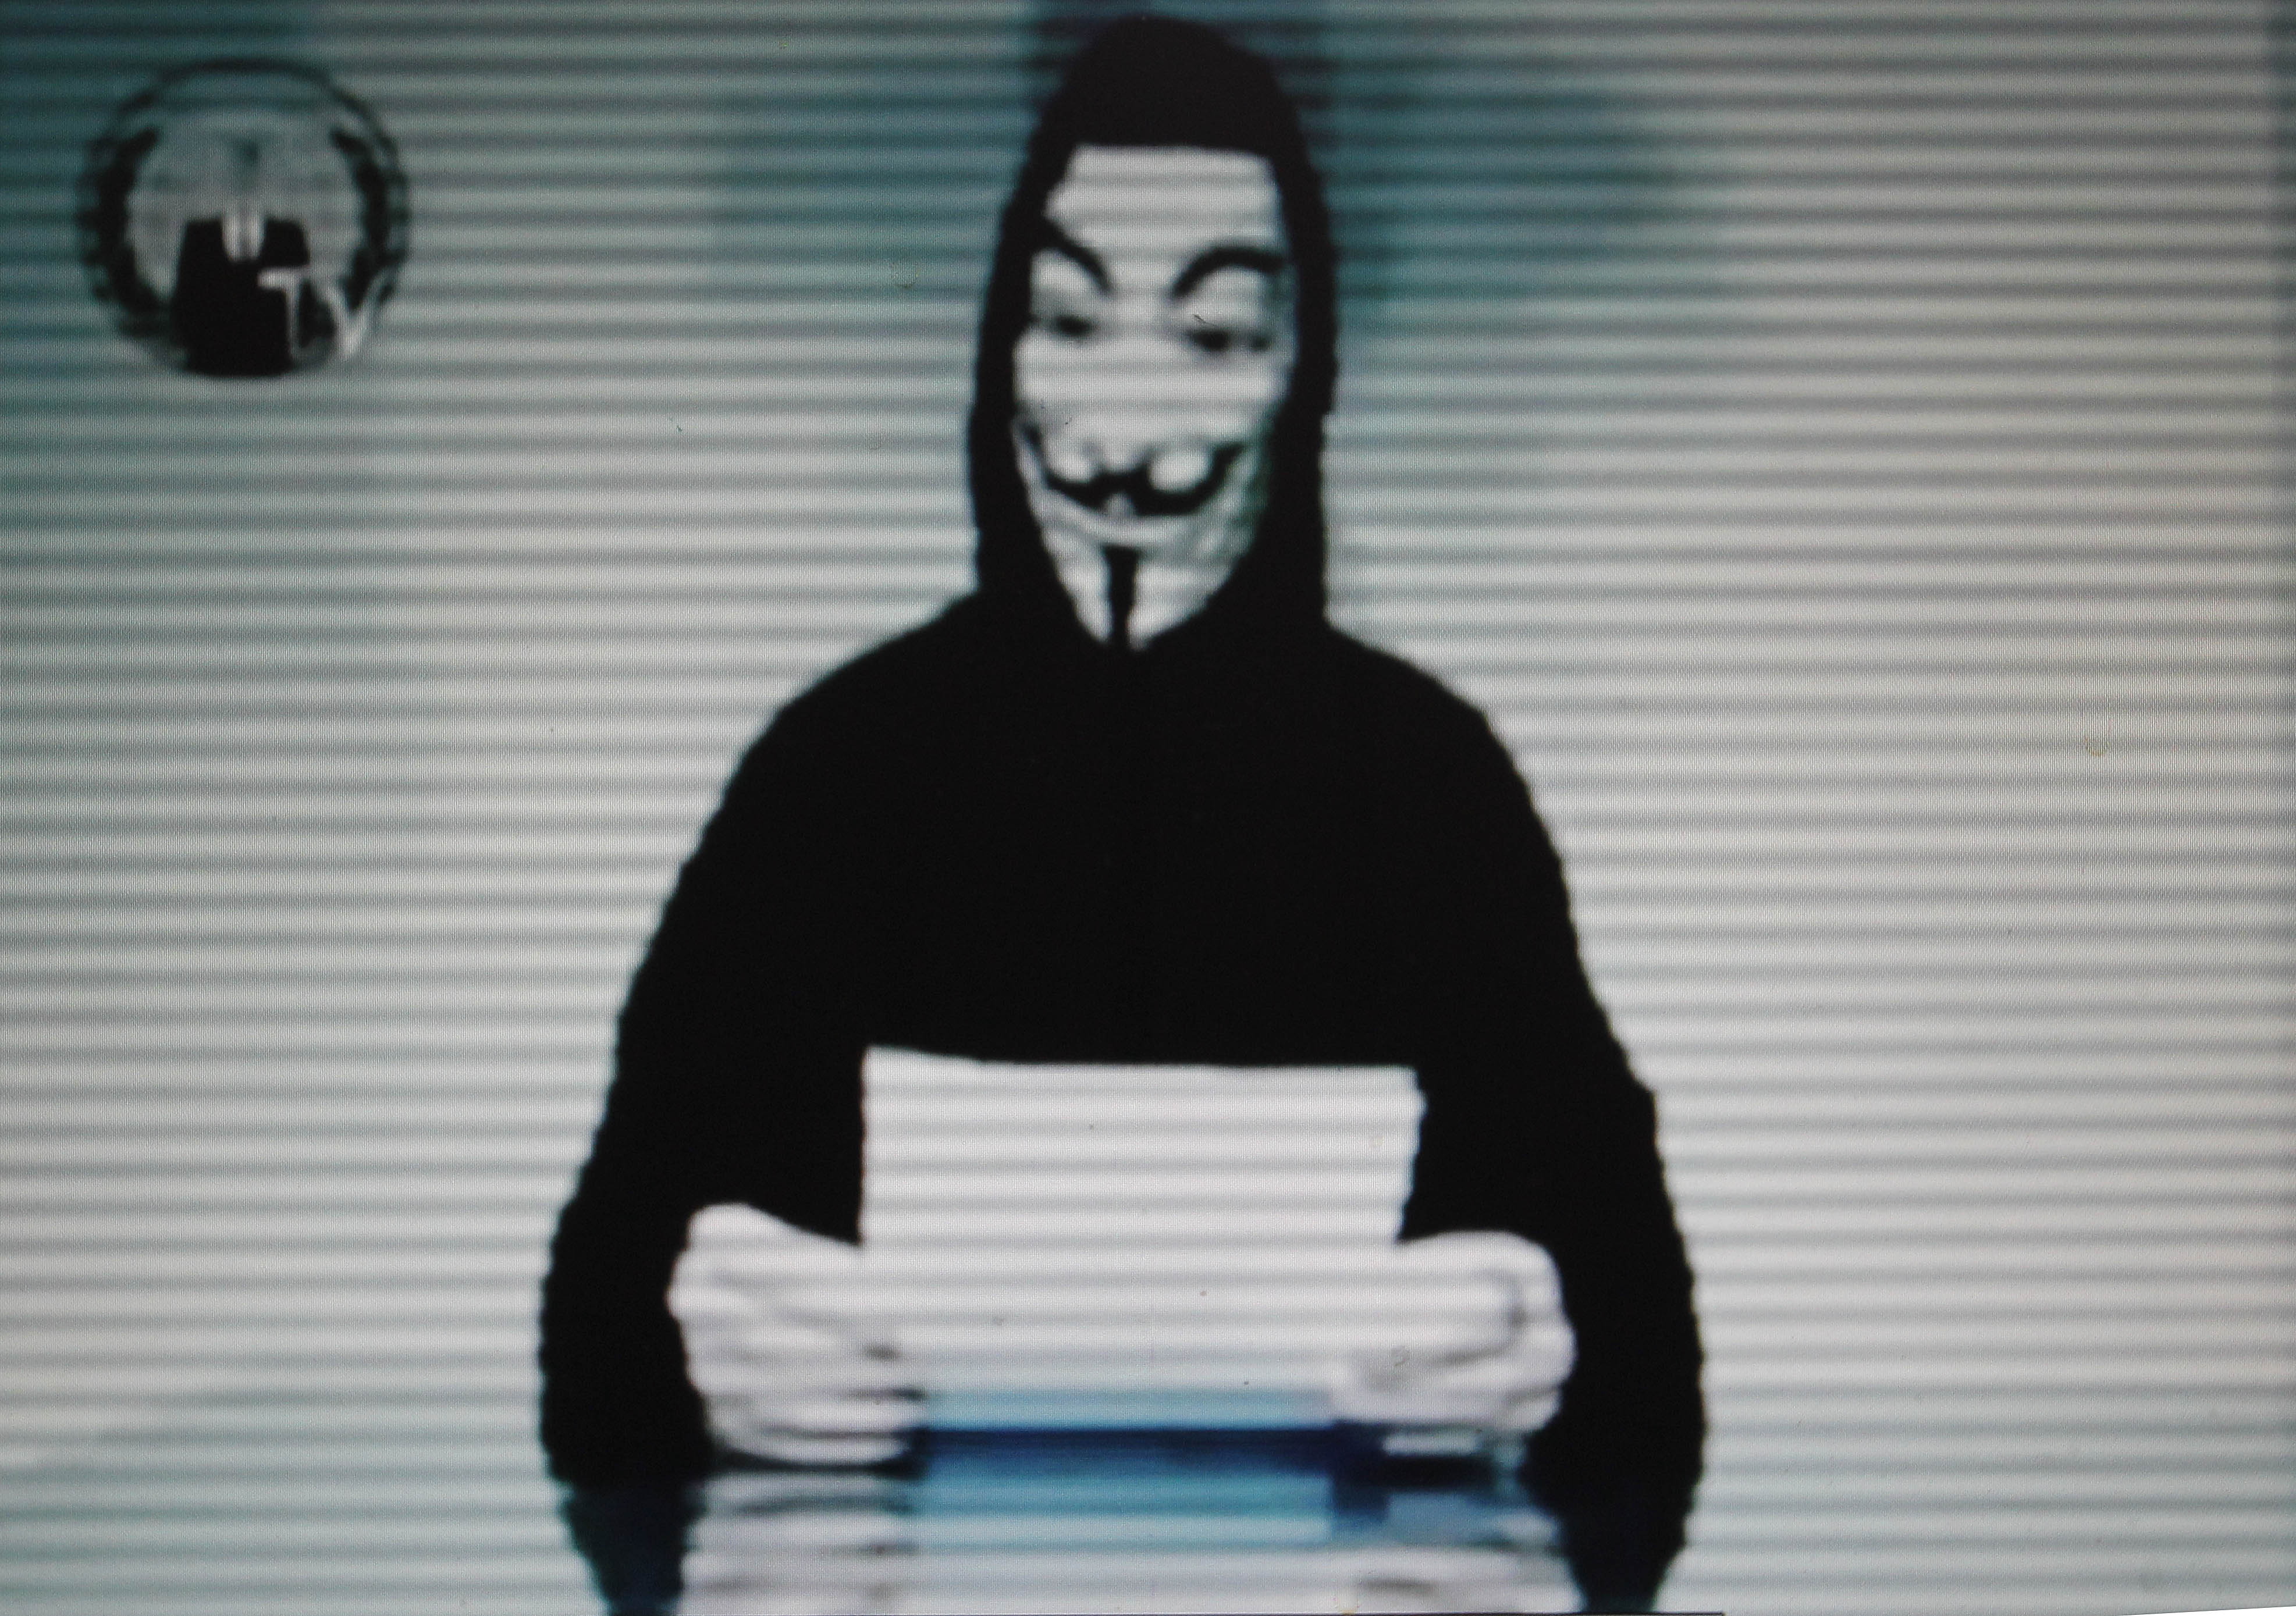 Hackare inom nätverket Anonymous har tidigare tagit på sig äran för attacken.